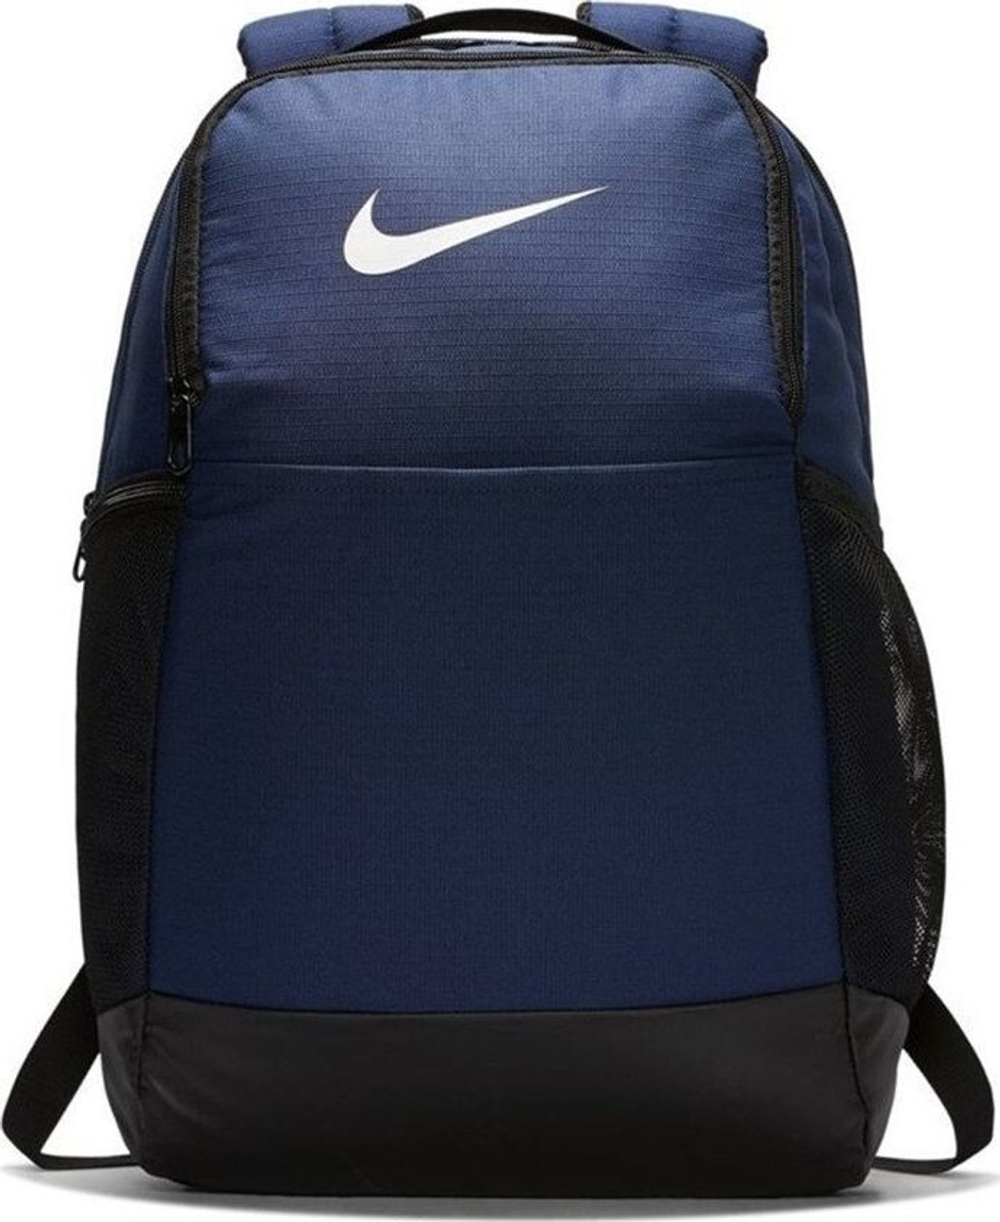 Рюкзак теннисный Nike Brasilia M 